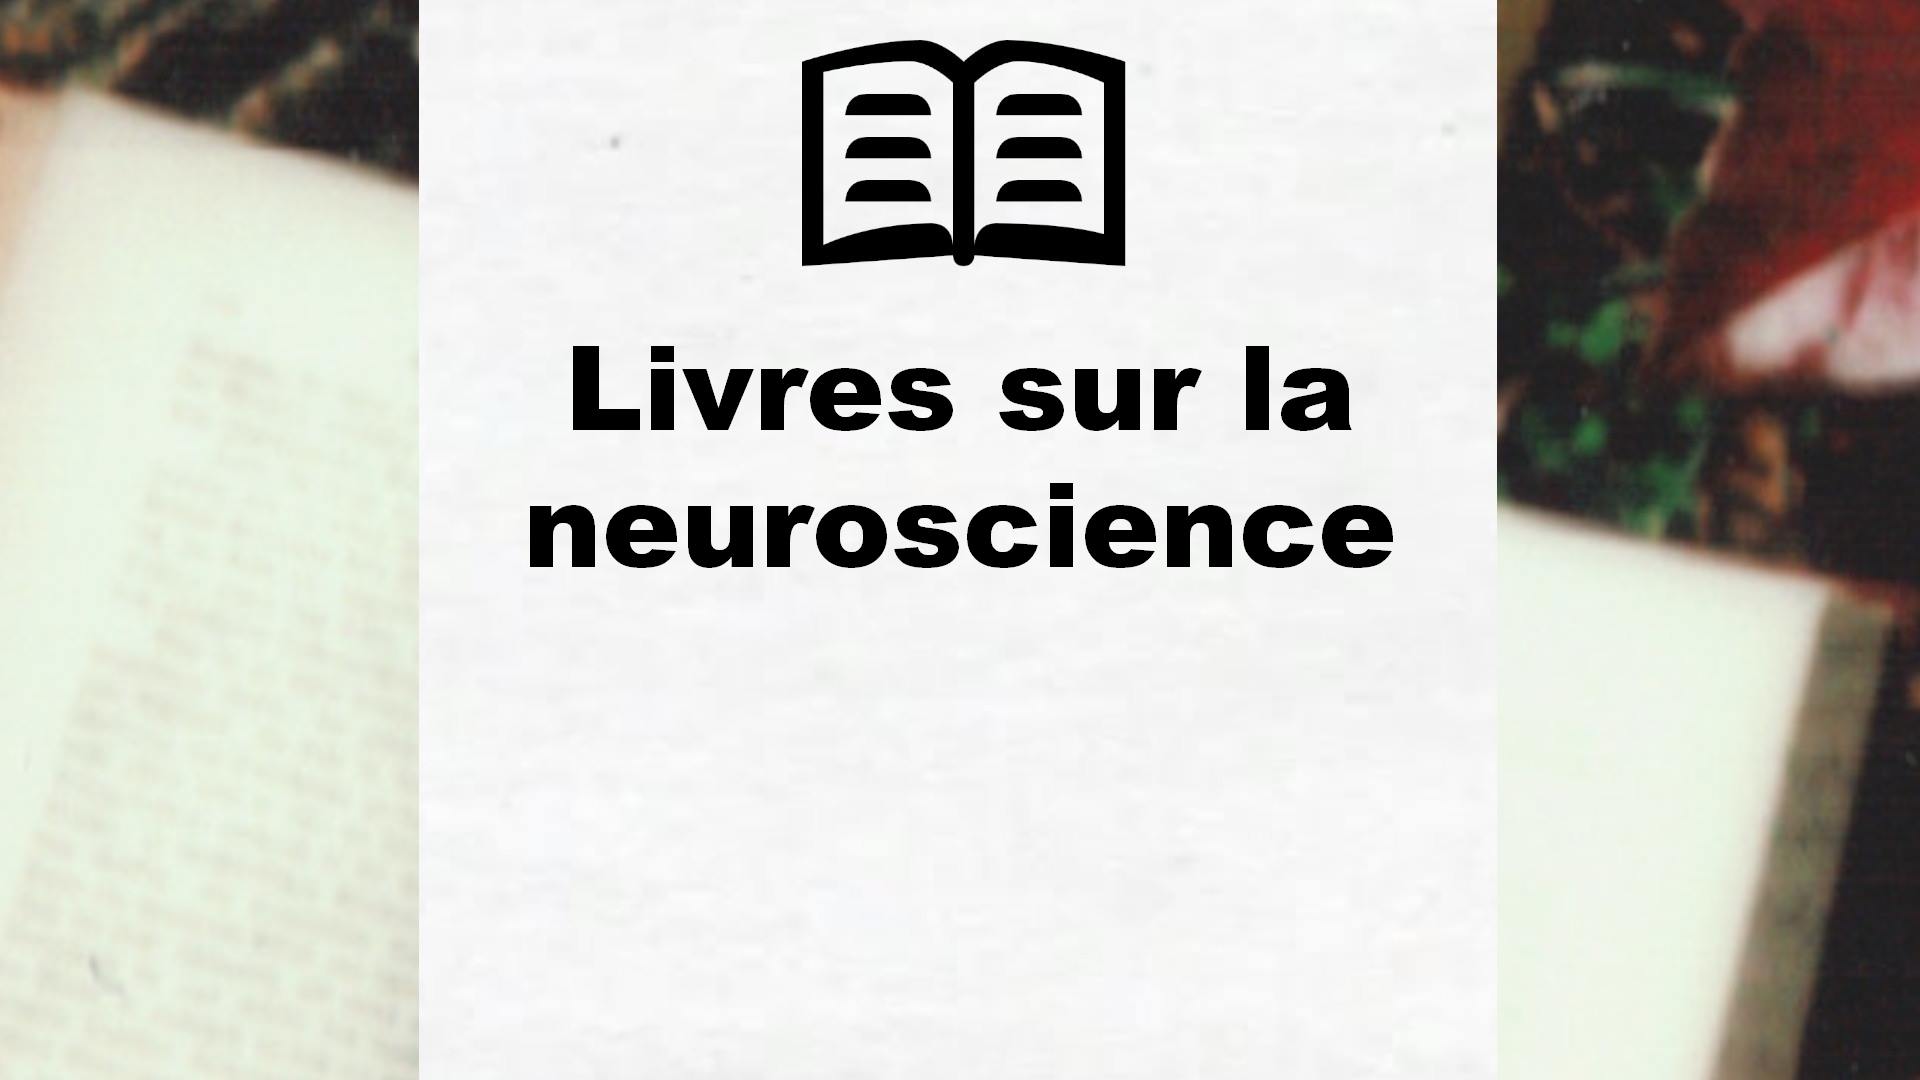 Livres sur la neuroscience